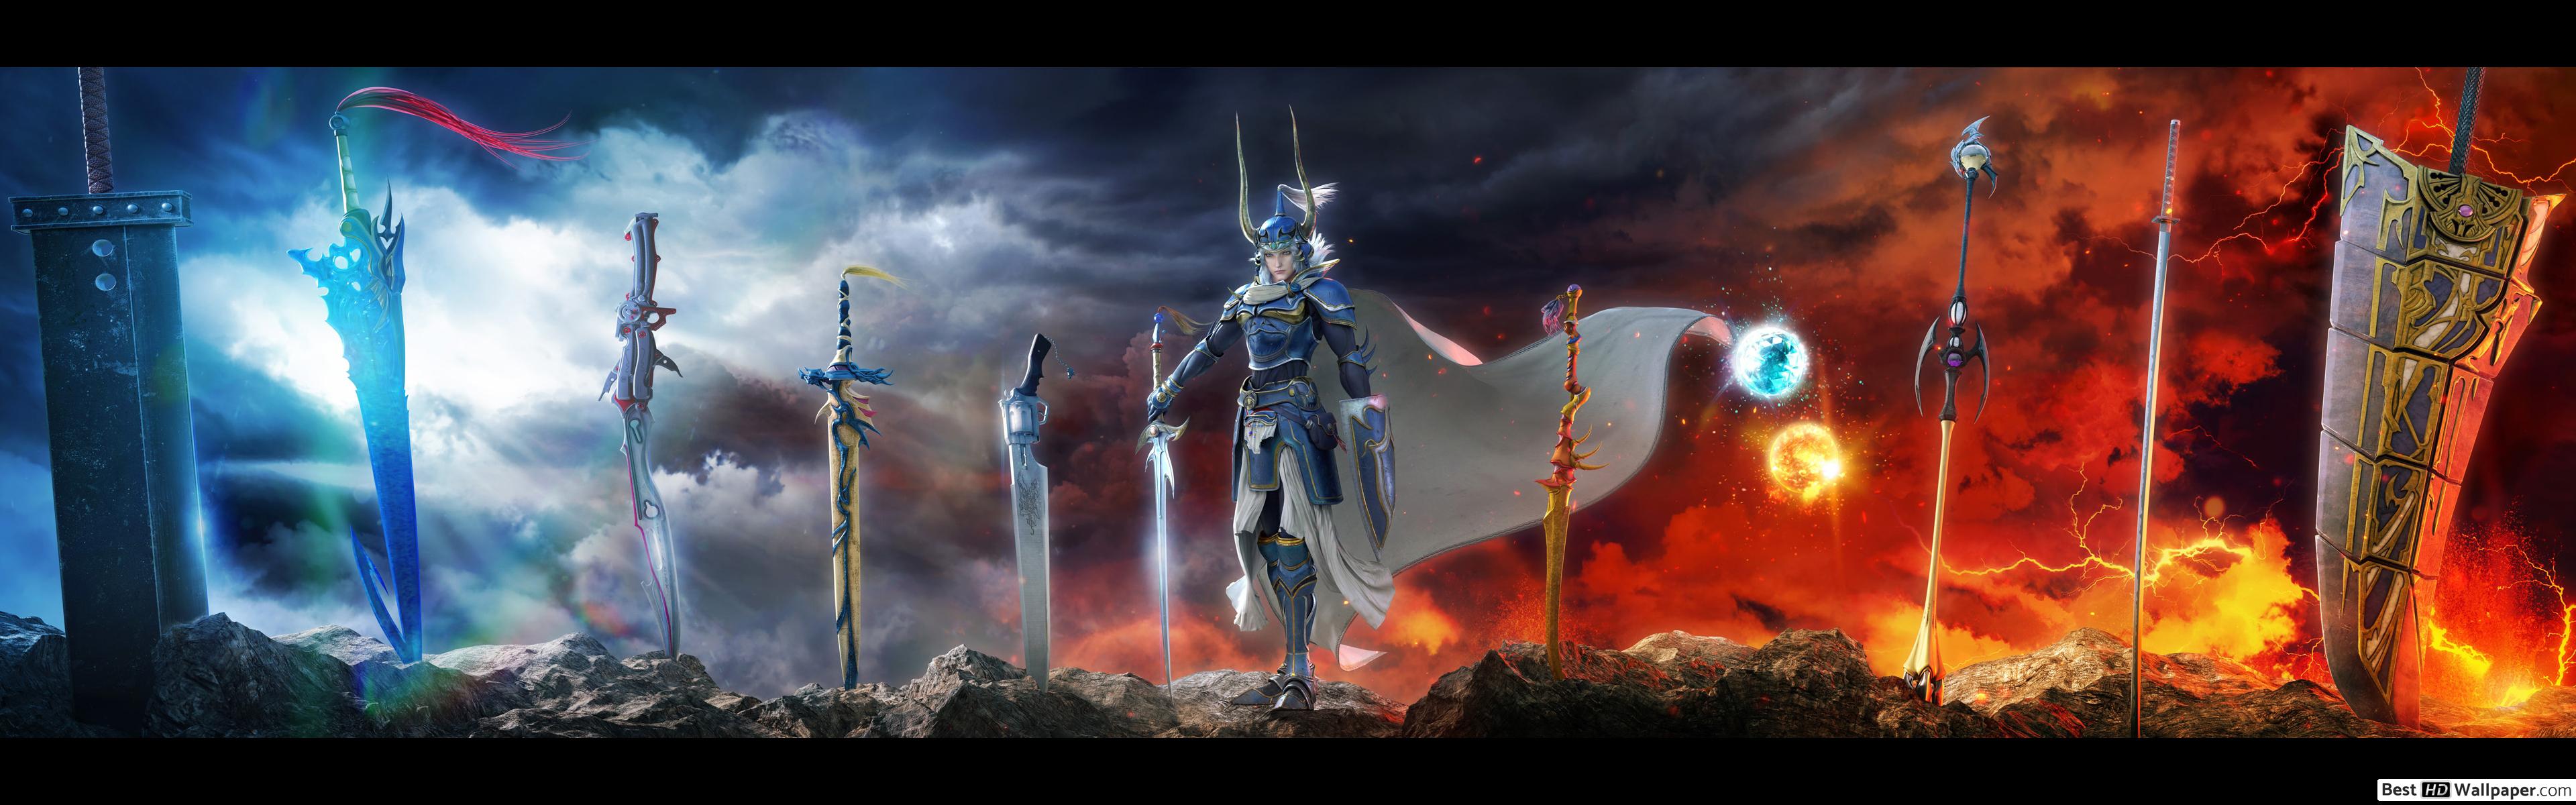 Final Fantasy Dissidia Ps4 Beta - HD Wallpaper 